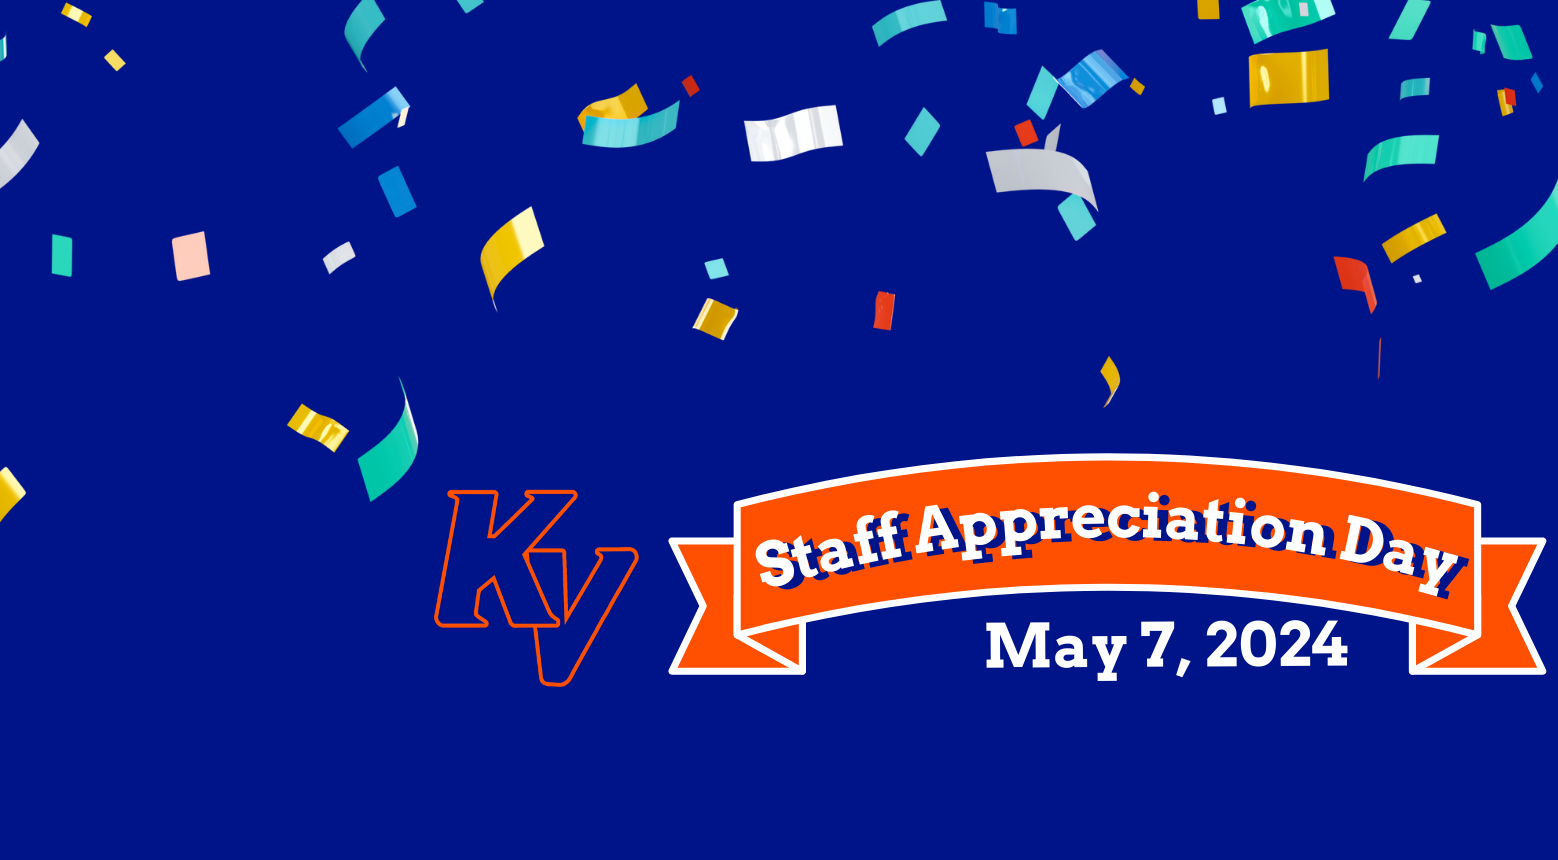 Staff Appreciation Day May 7, 2024